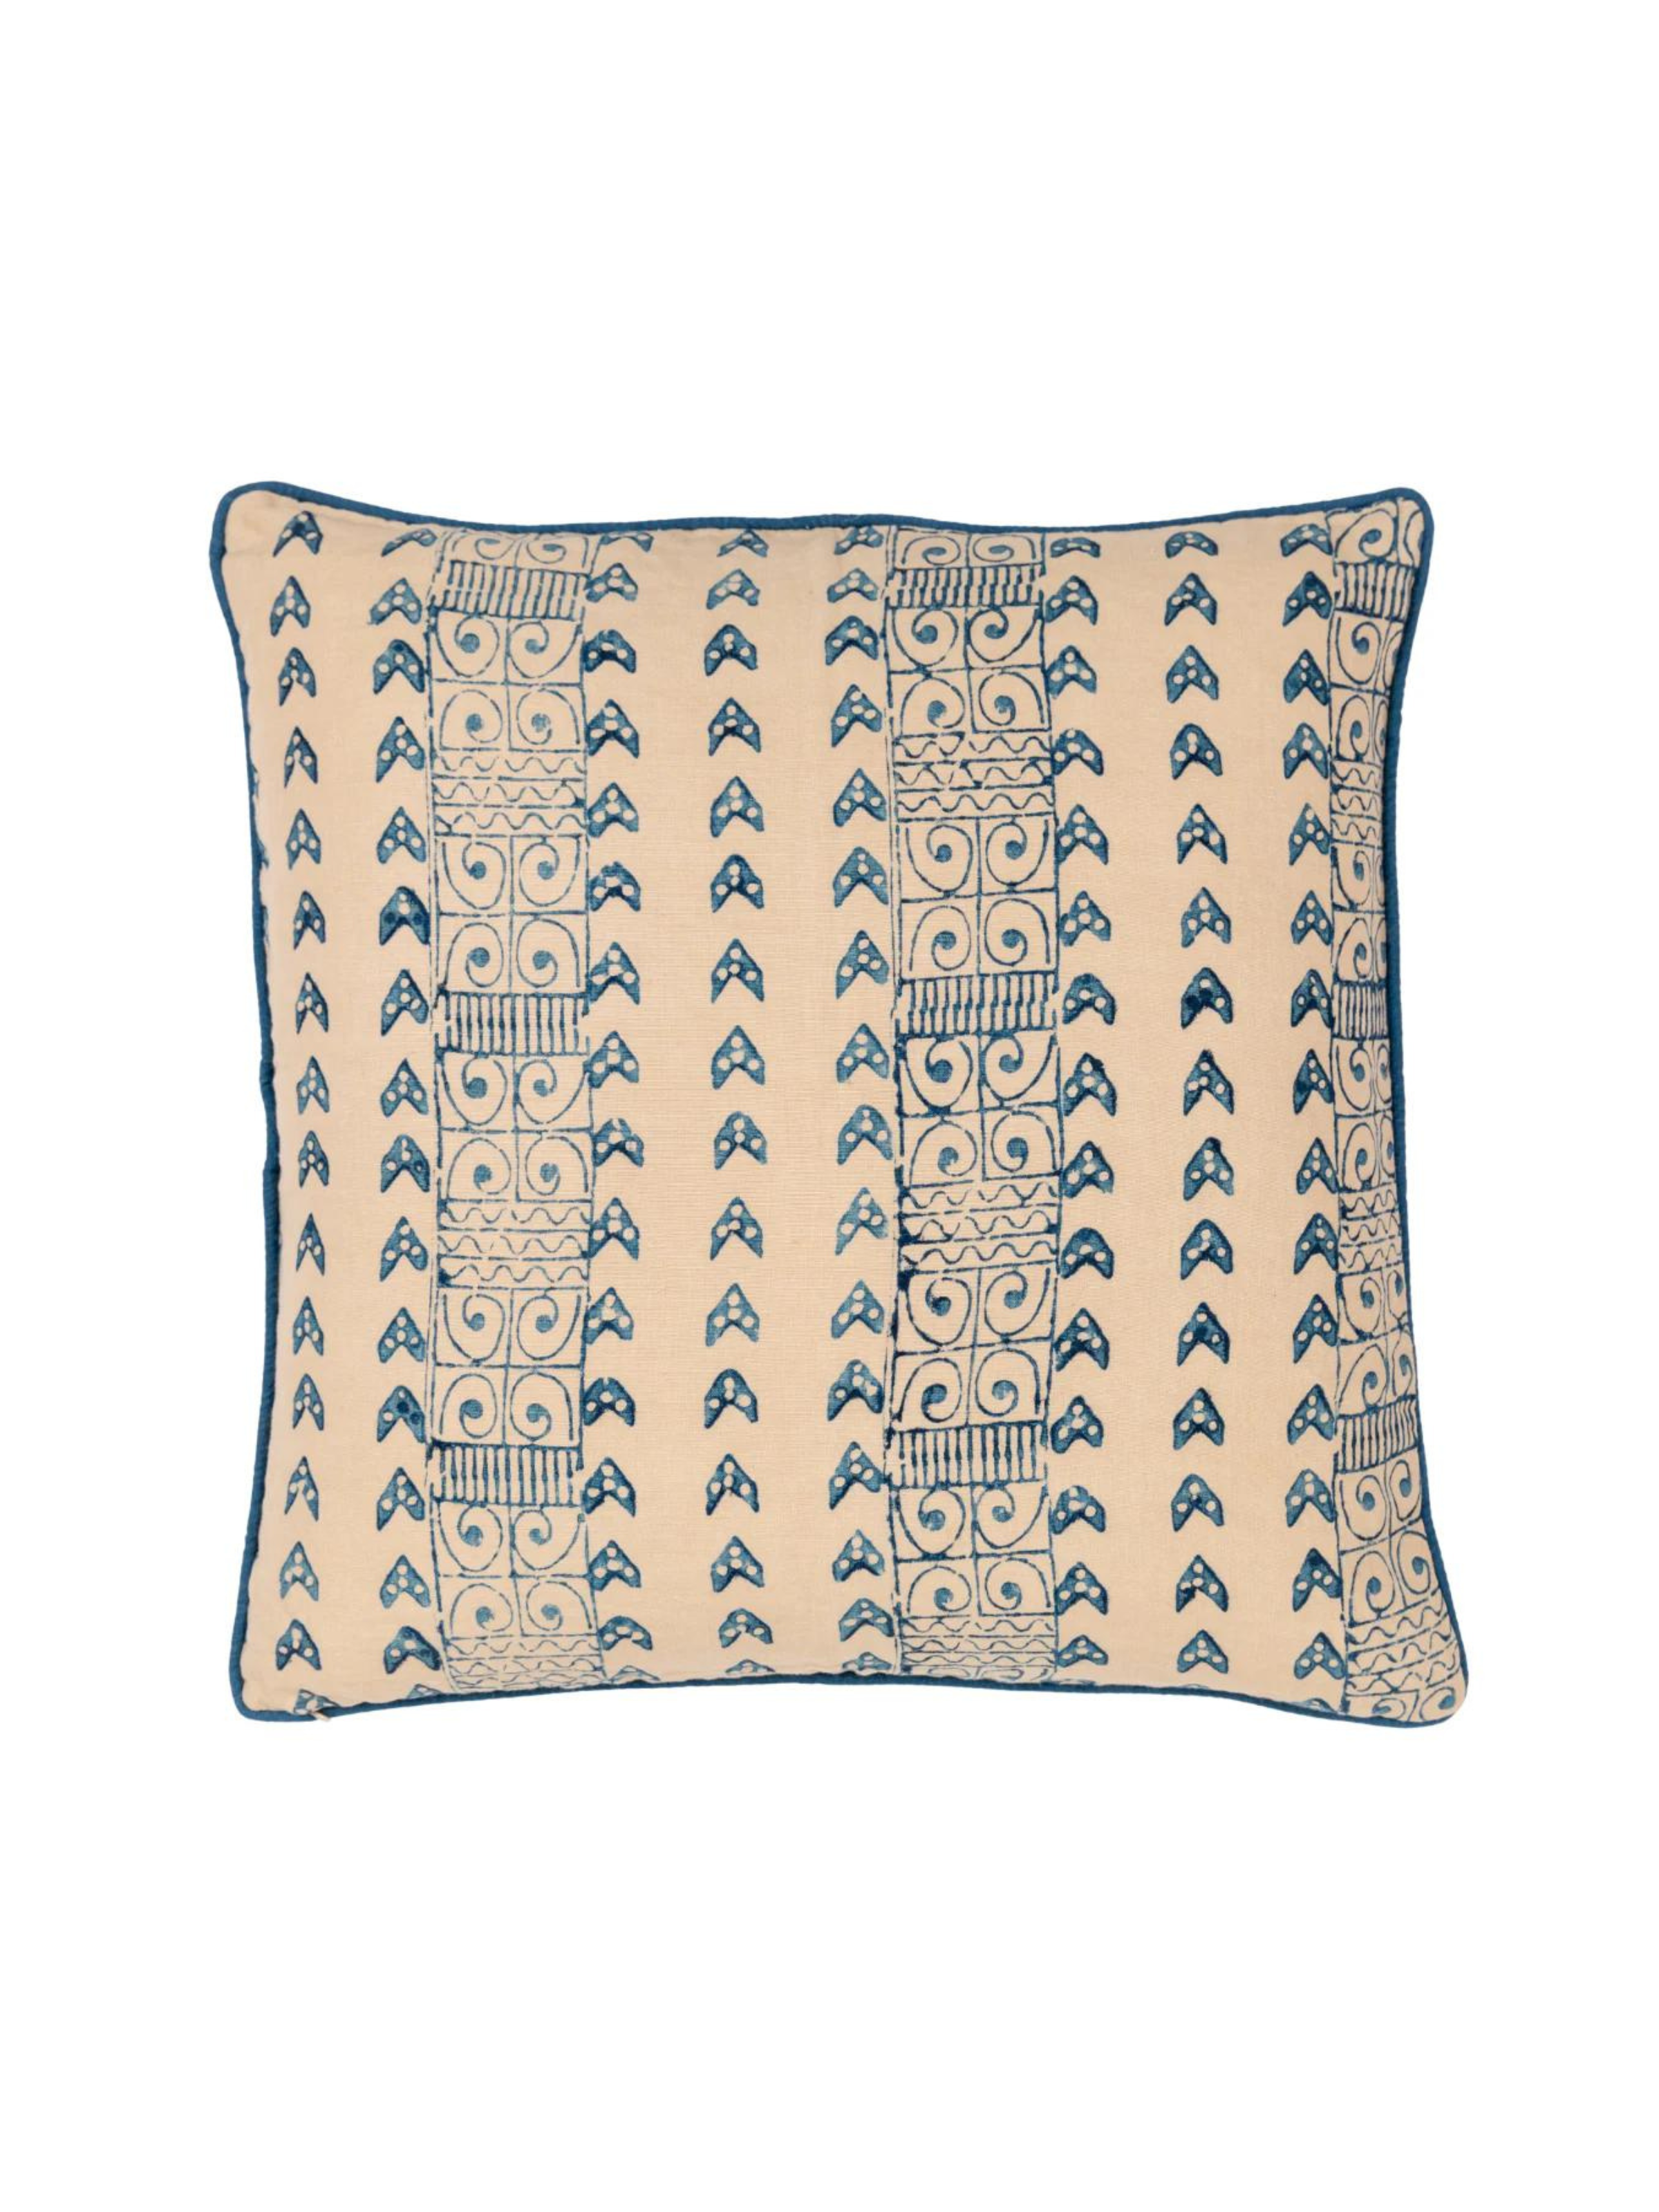 Zambia Blue Decorative Pillow Cover